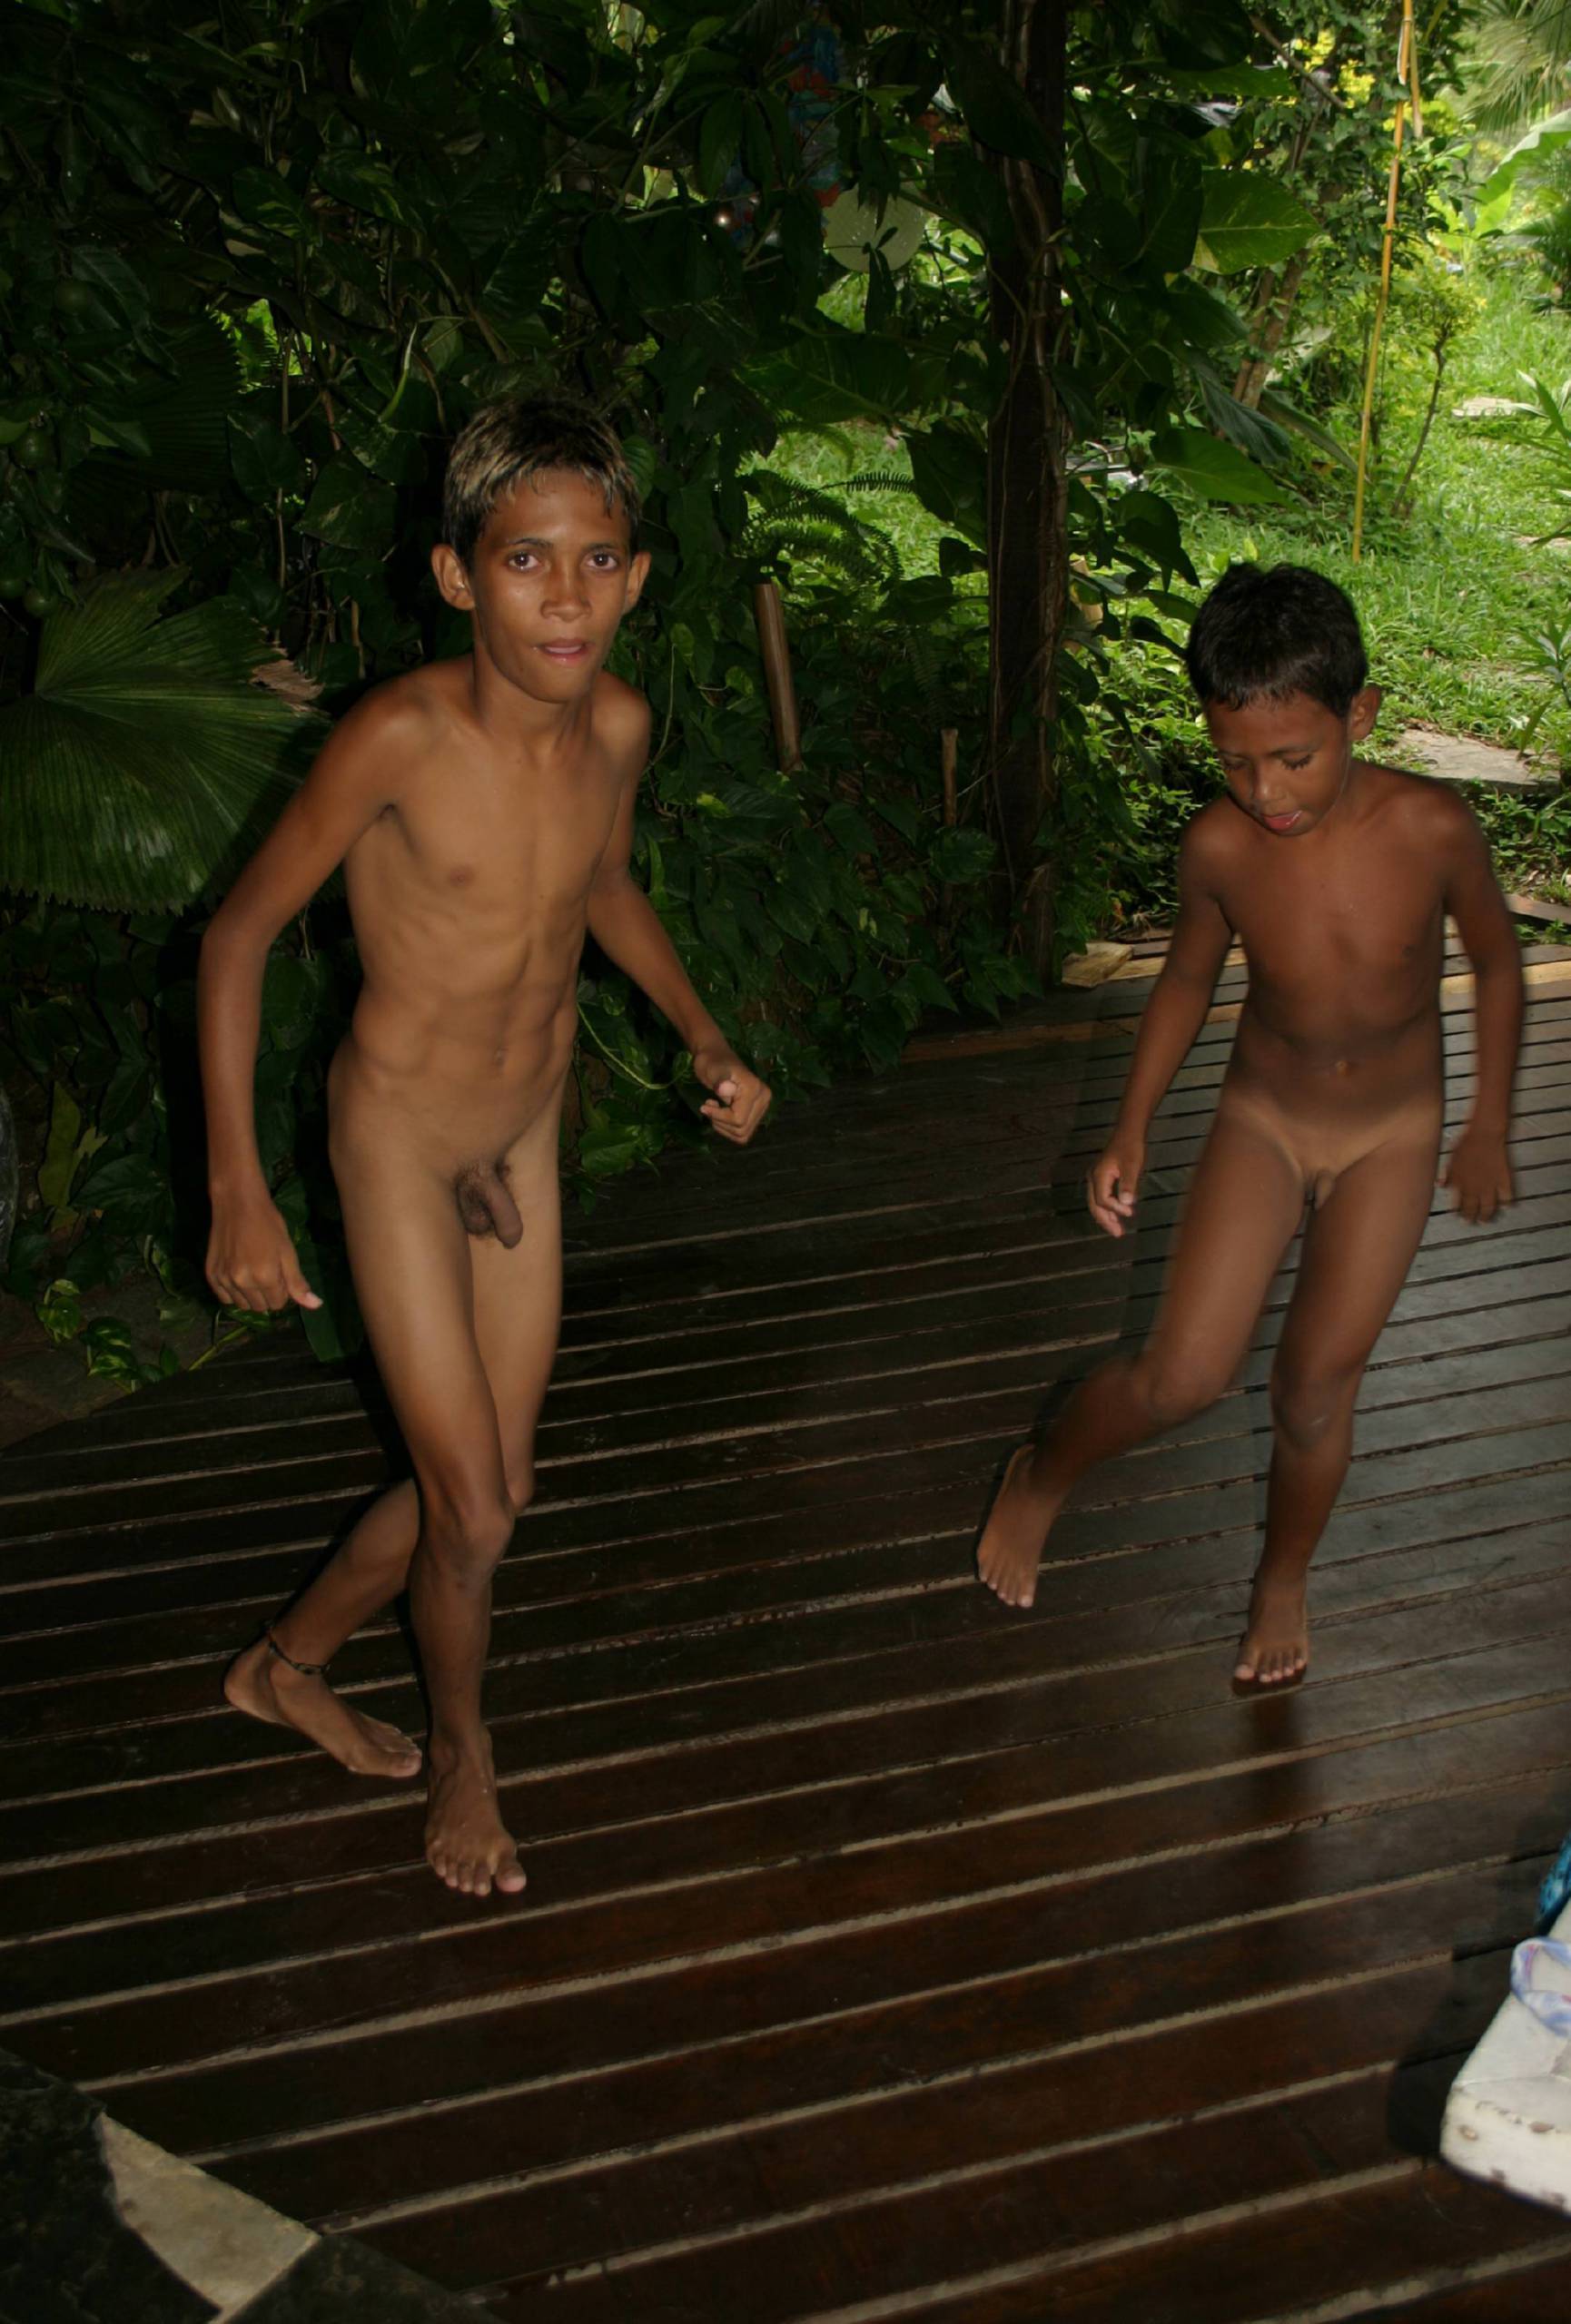 Nudist Photos Brazilian Stage Fun Games - 2